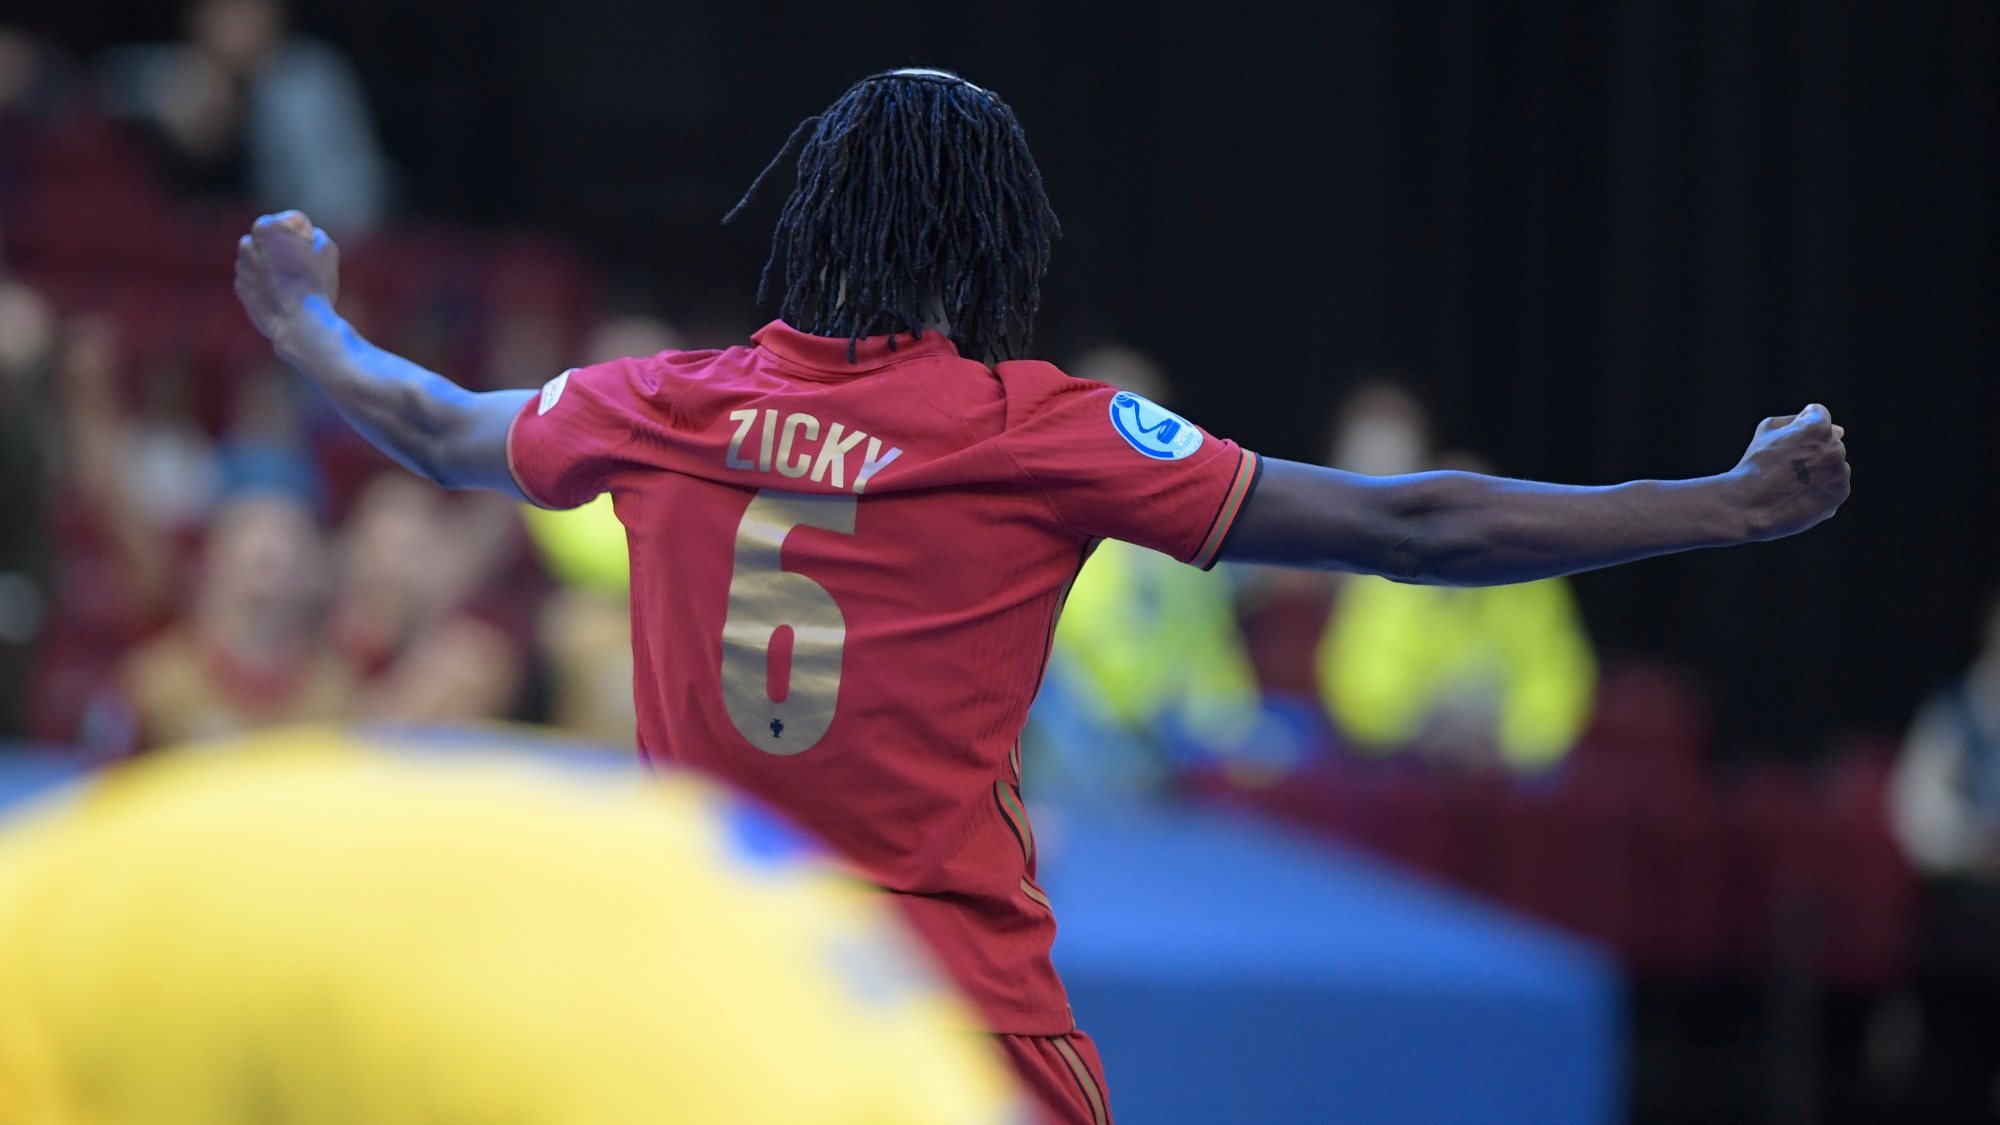 Zicky eleito o melhor jogador do Europeu de futsal - Desporto